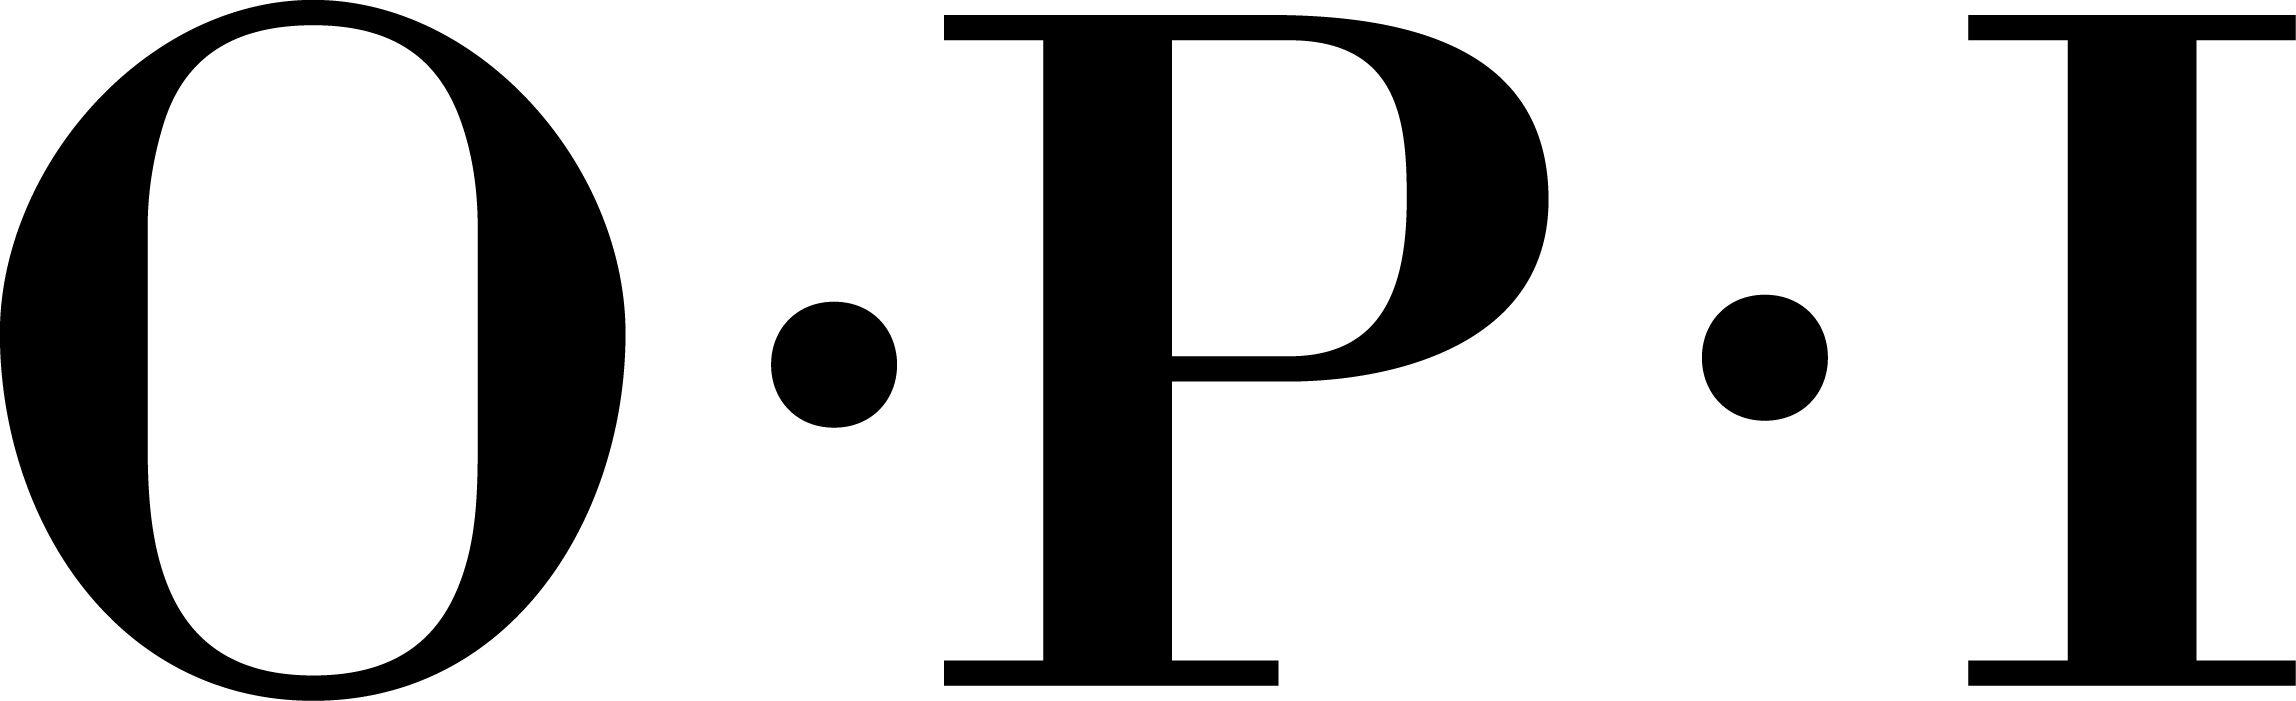 OPI Logo - File:OPI logo.jpg - Wikimedia Commons